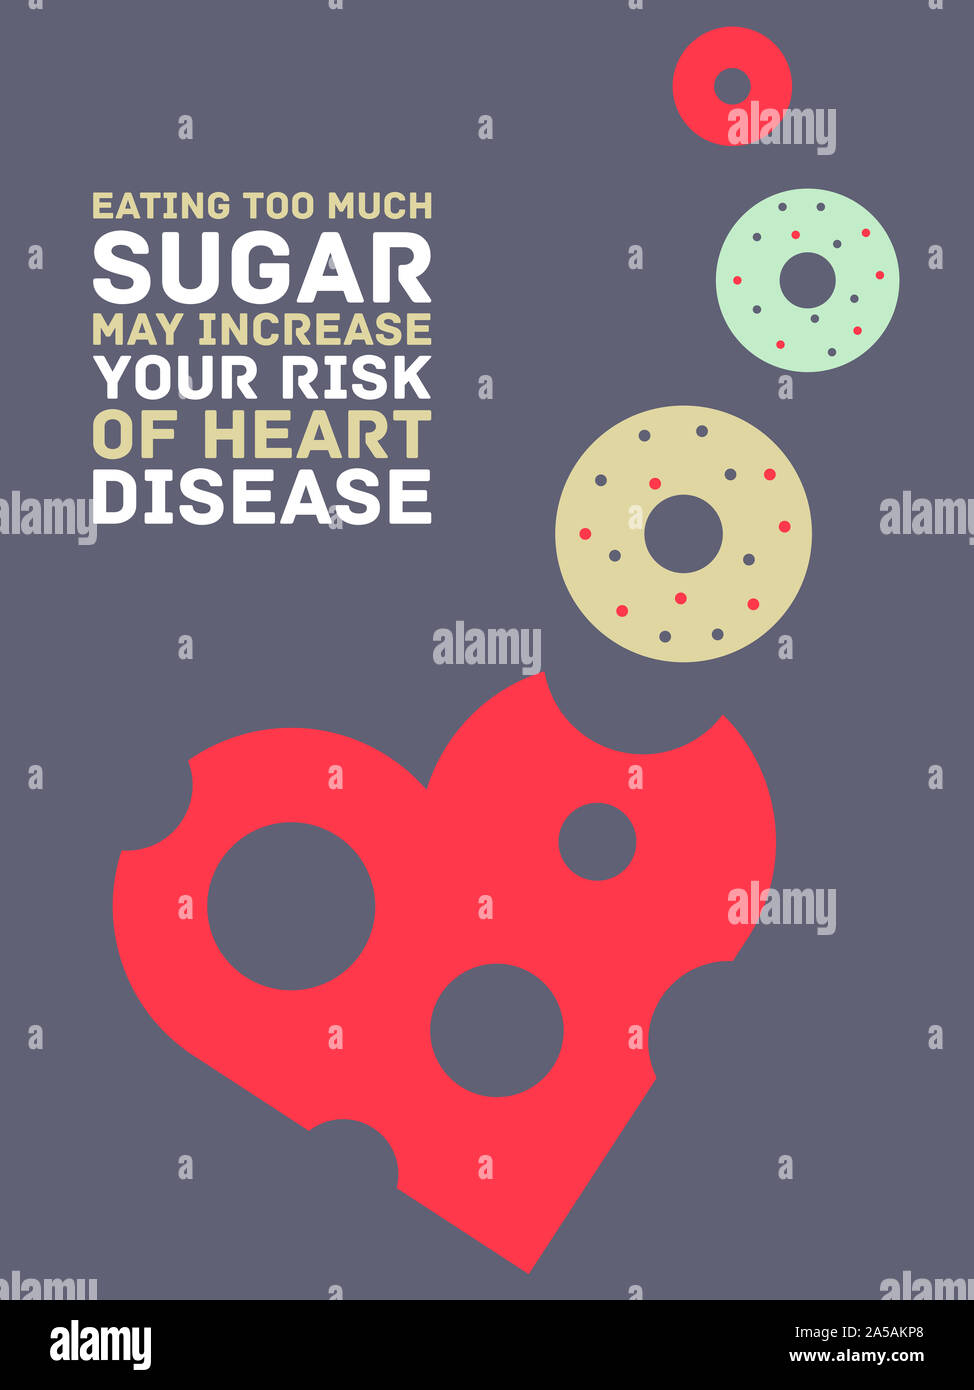 Prinzipdarstellung über den Zucker Schädlichkeit. Der Titel wird - Essen zu viel Zucker kann das Risiko von Herzerkrankungen steigern. Stockfoto